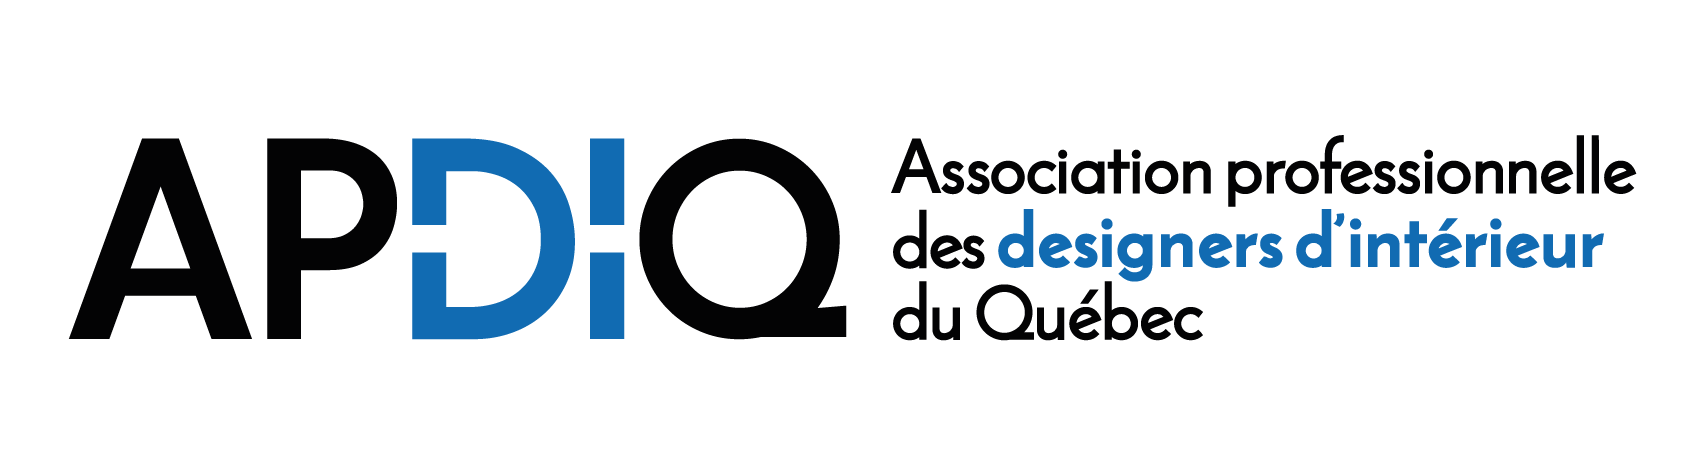 Association professionnelle des designers d'intérieur du Québec - APDIQ